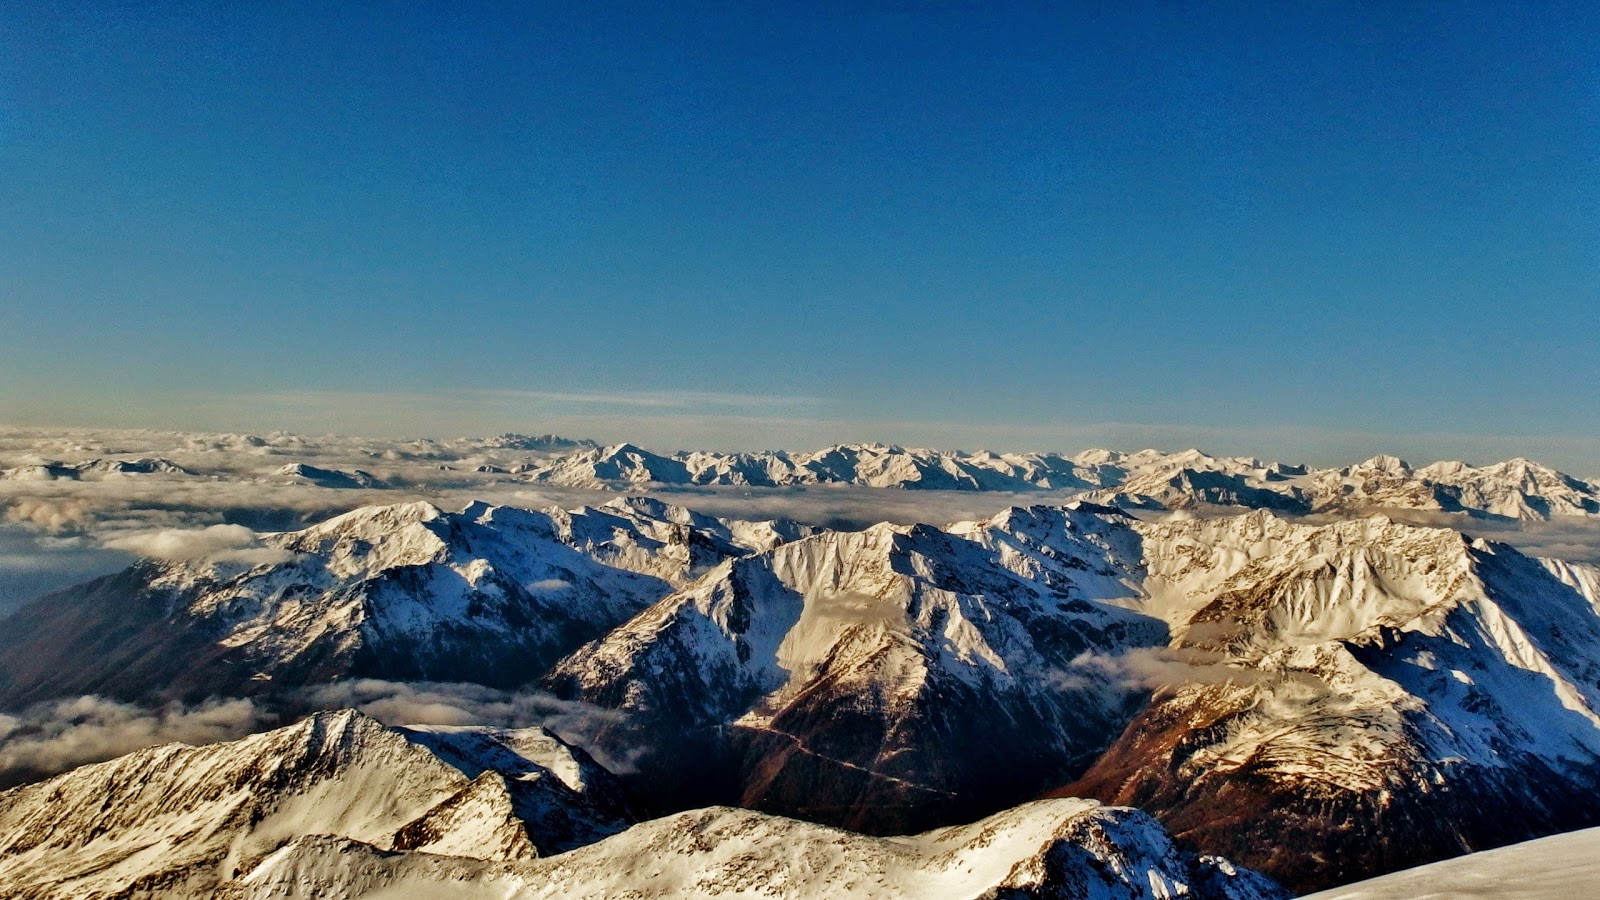 Auszeit im Ötztal 2: Von weißen Riesen, historischen Stätten und zerklüfteten Gletschern (Similaun 3.606m, Fineilspitze 3.514m)